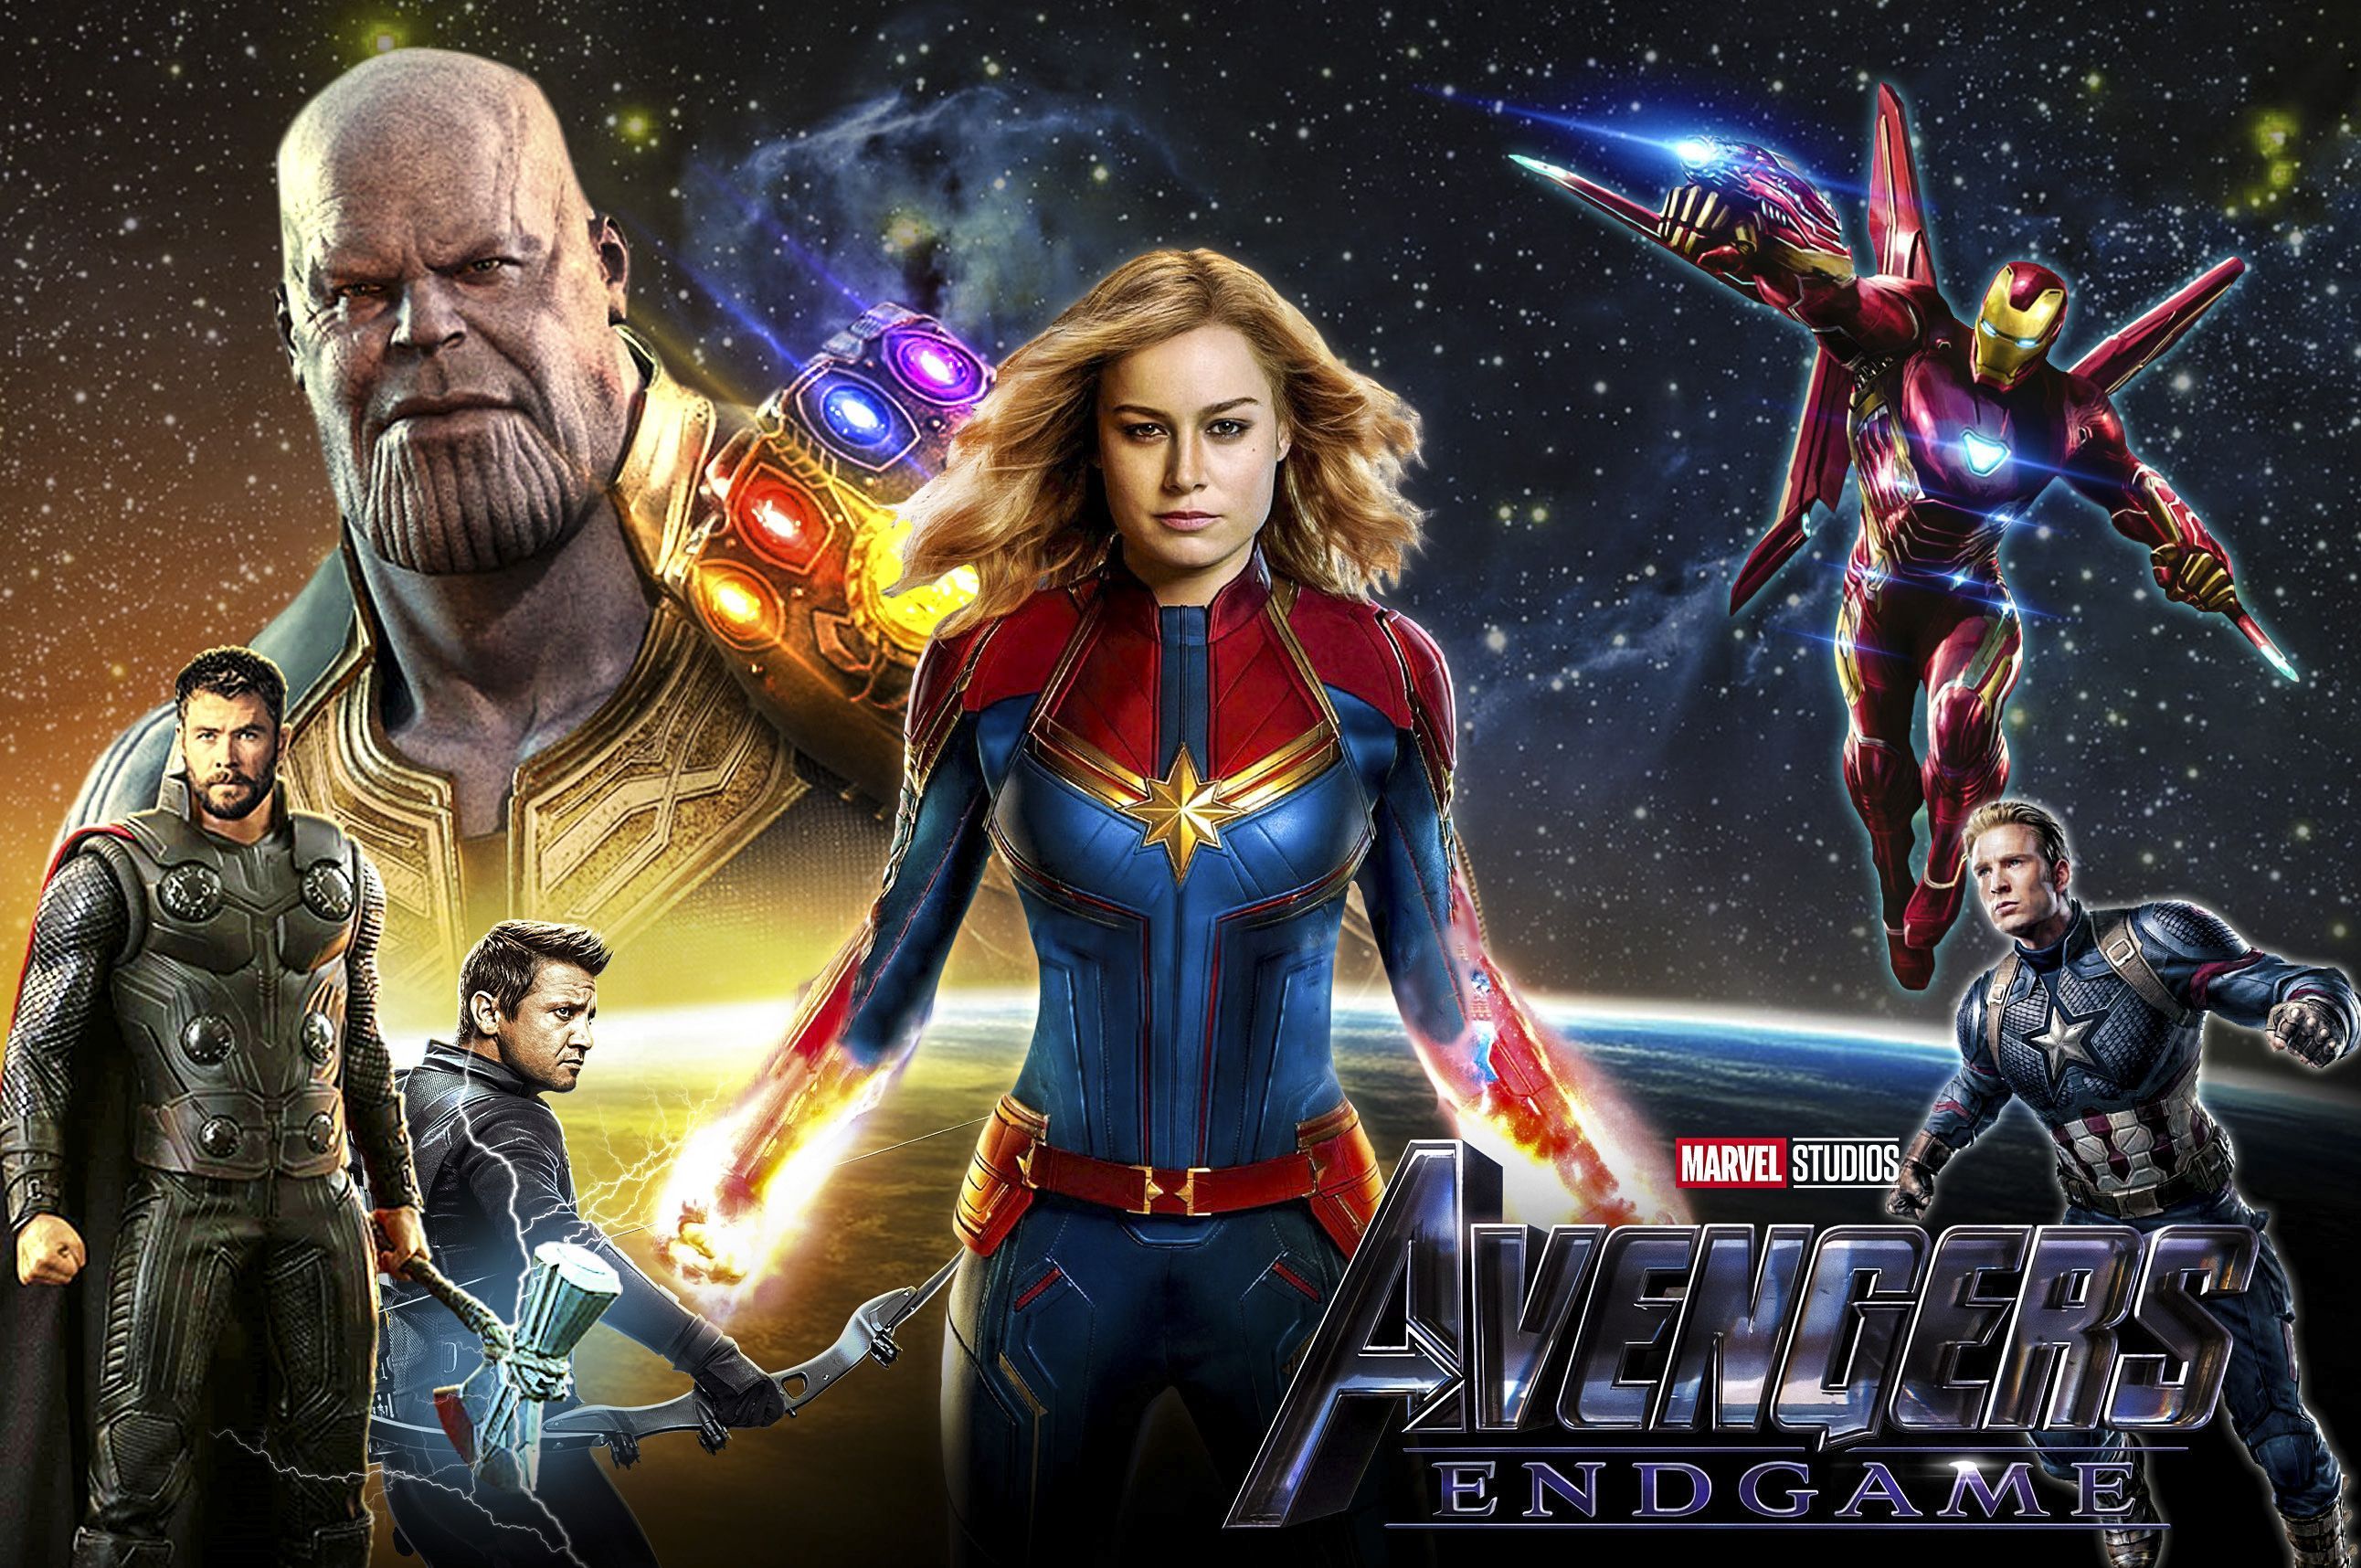 Avengers Endgame Wallpaper. Thor